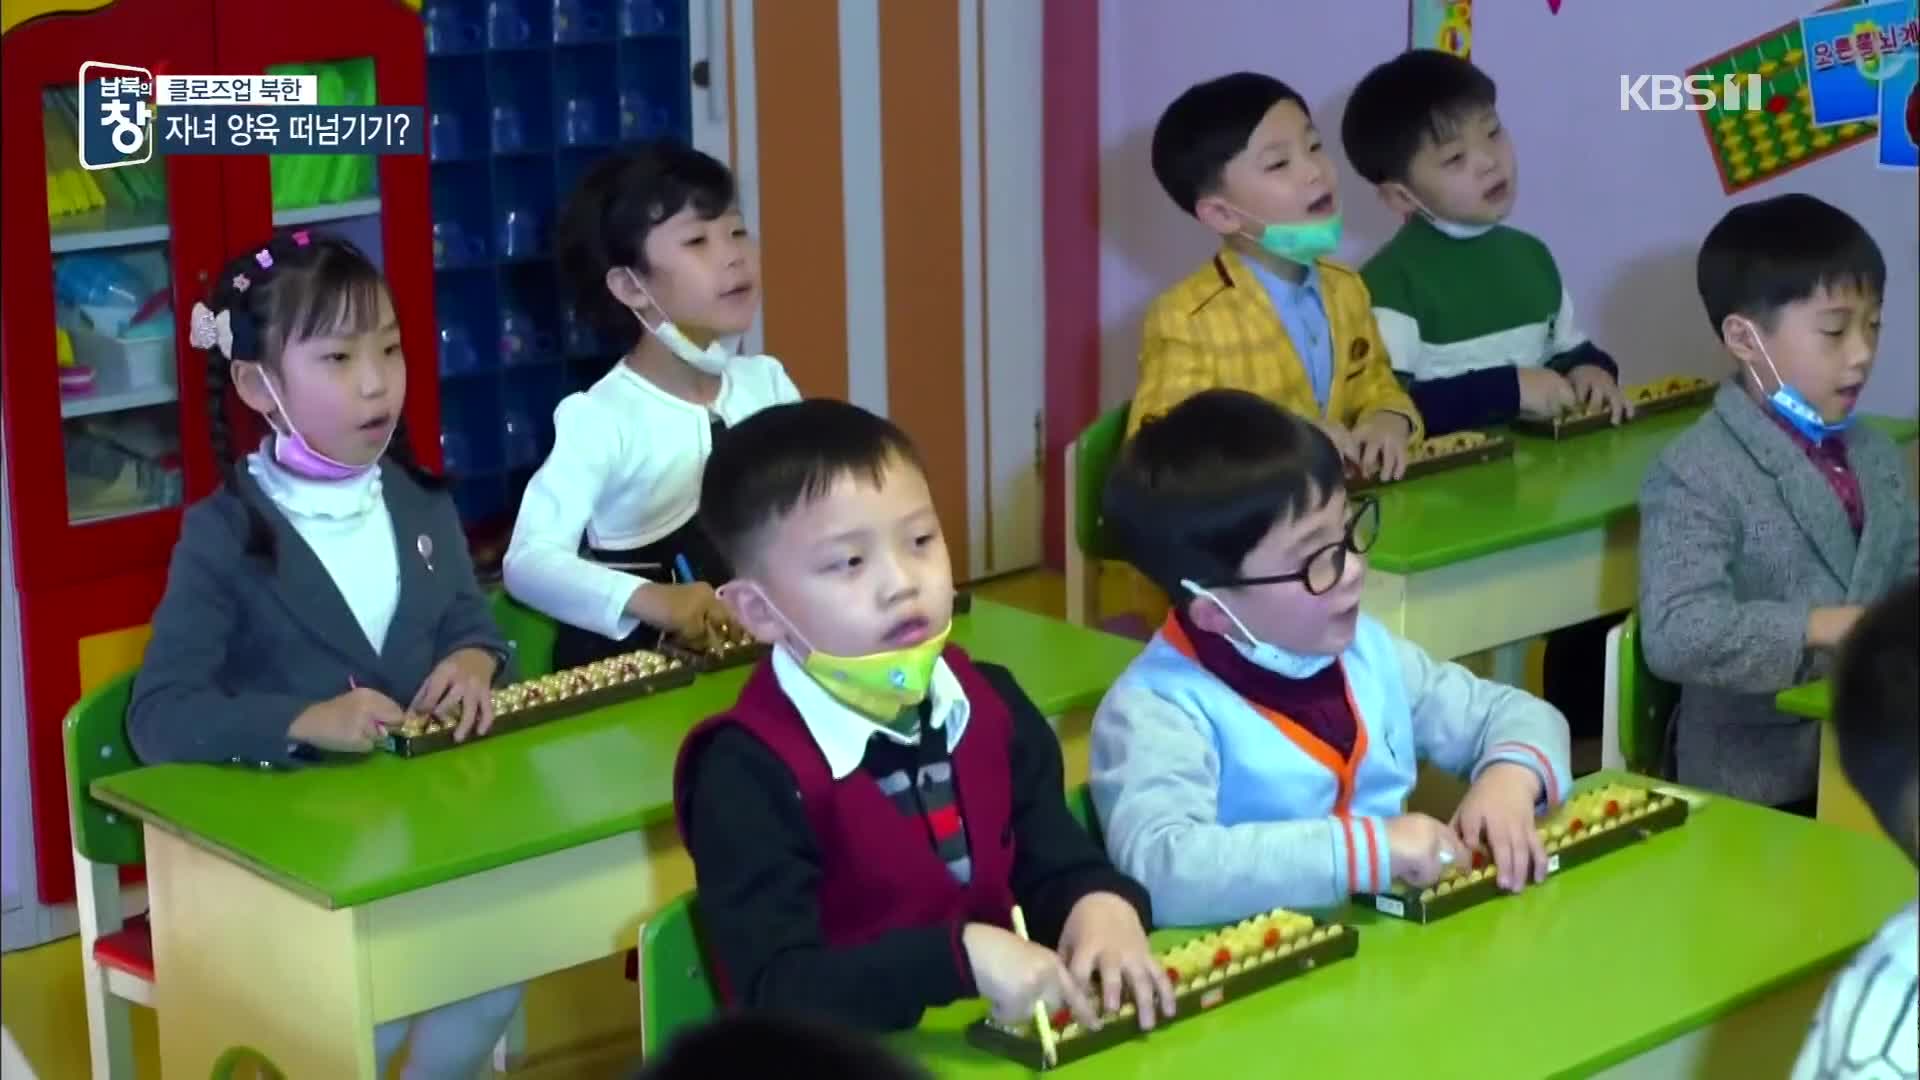 [클로즈업 북한] “사투리 쓰지 마라”…경제난 속 육아 정책 한계는?